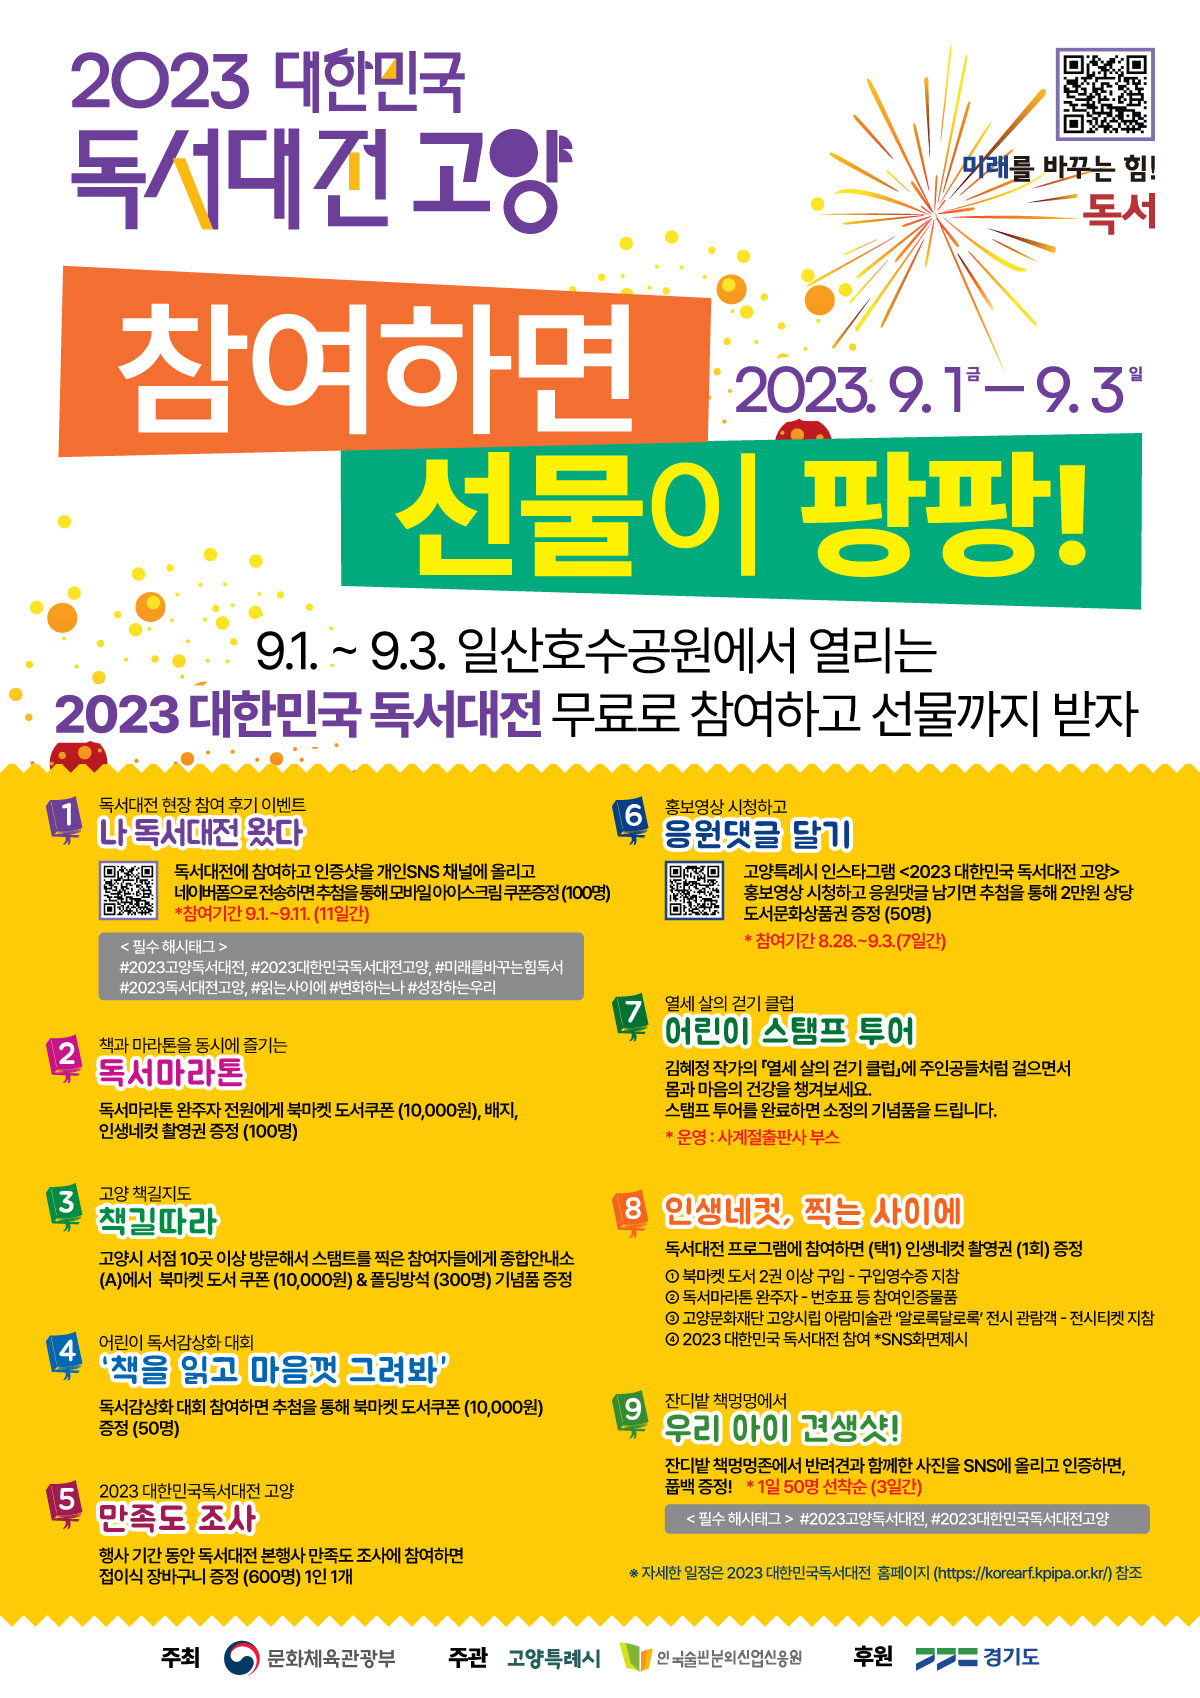 1일 일산호수공원에서 개막하는 대한민국 도서대전 홍보물